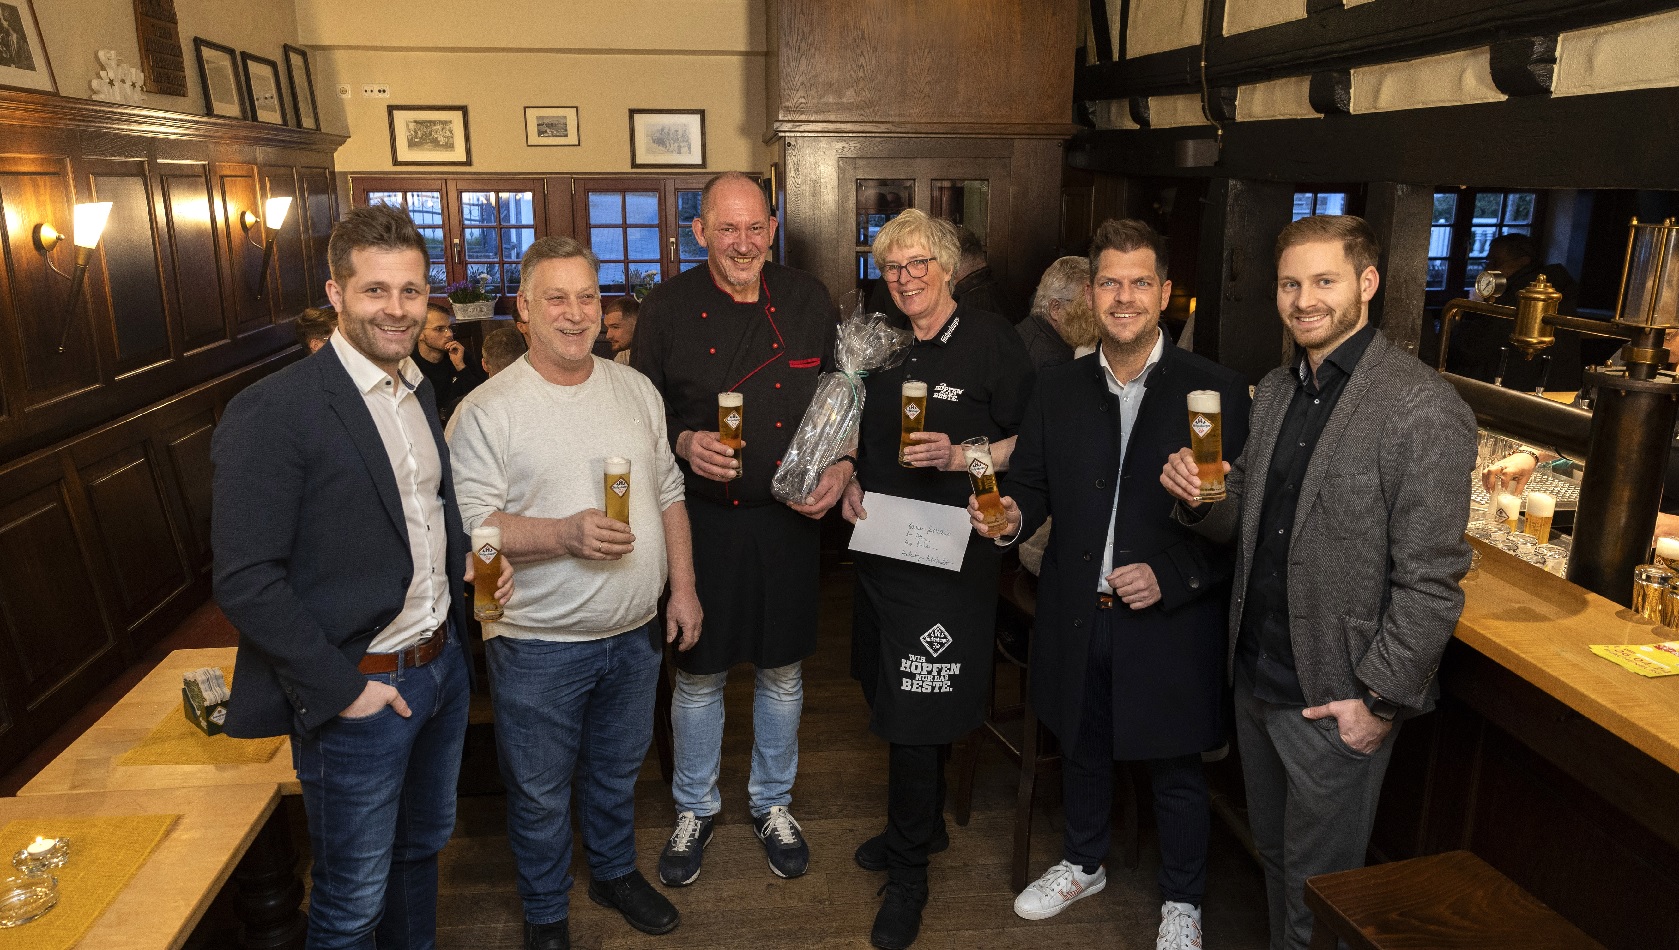 Brauerei-Gasthaus "Zum Stern" in Hachenburg feiert Wiedererffnung mit neuem Konzept